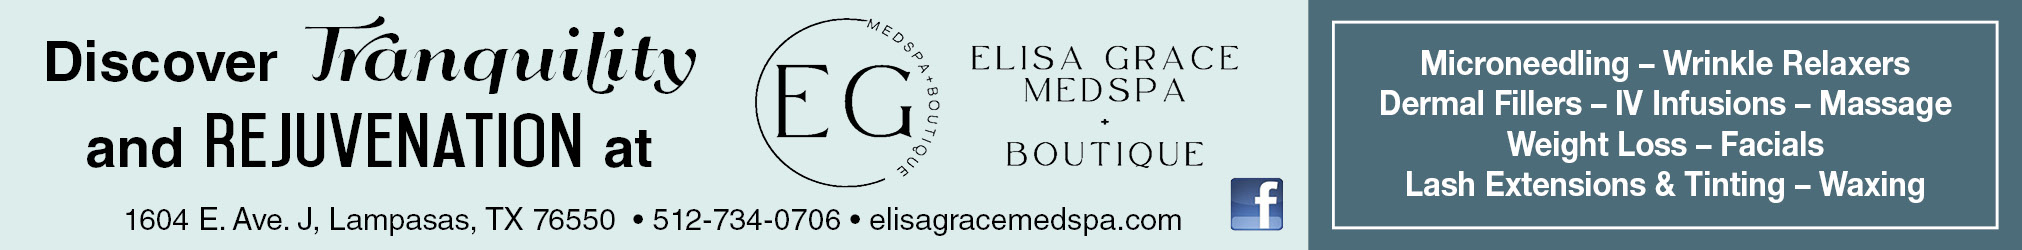 Elisa Grace Med Spa + Boutique